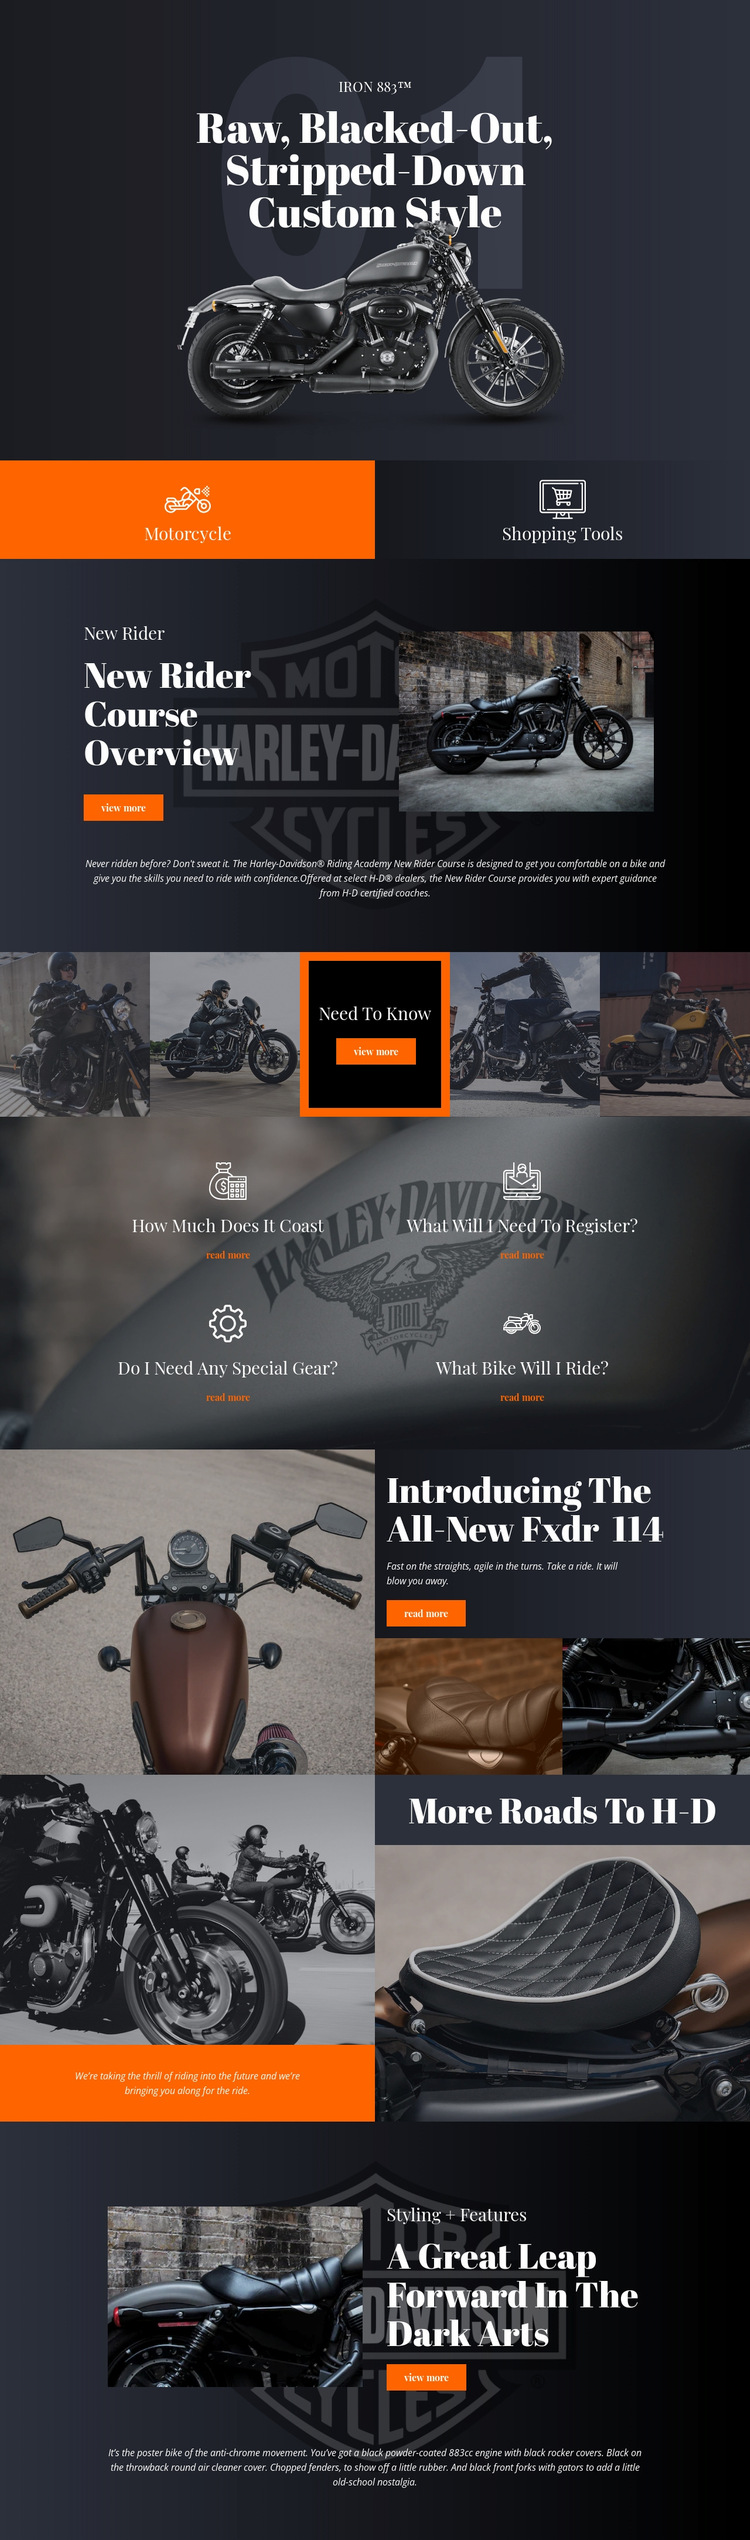 Harley Davidson Website Builder Templates